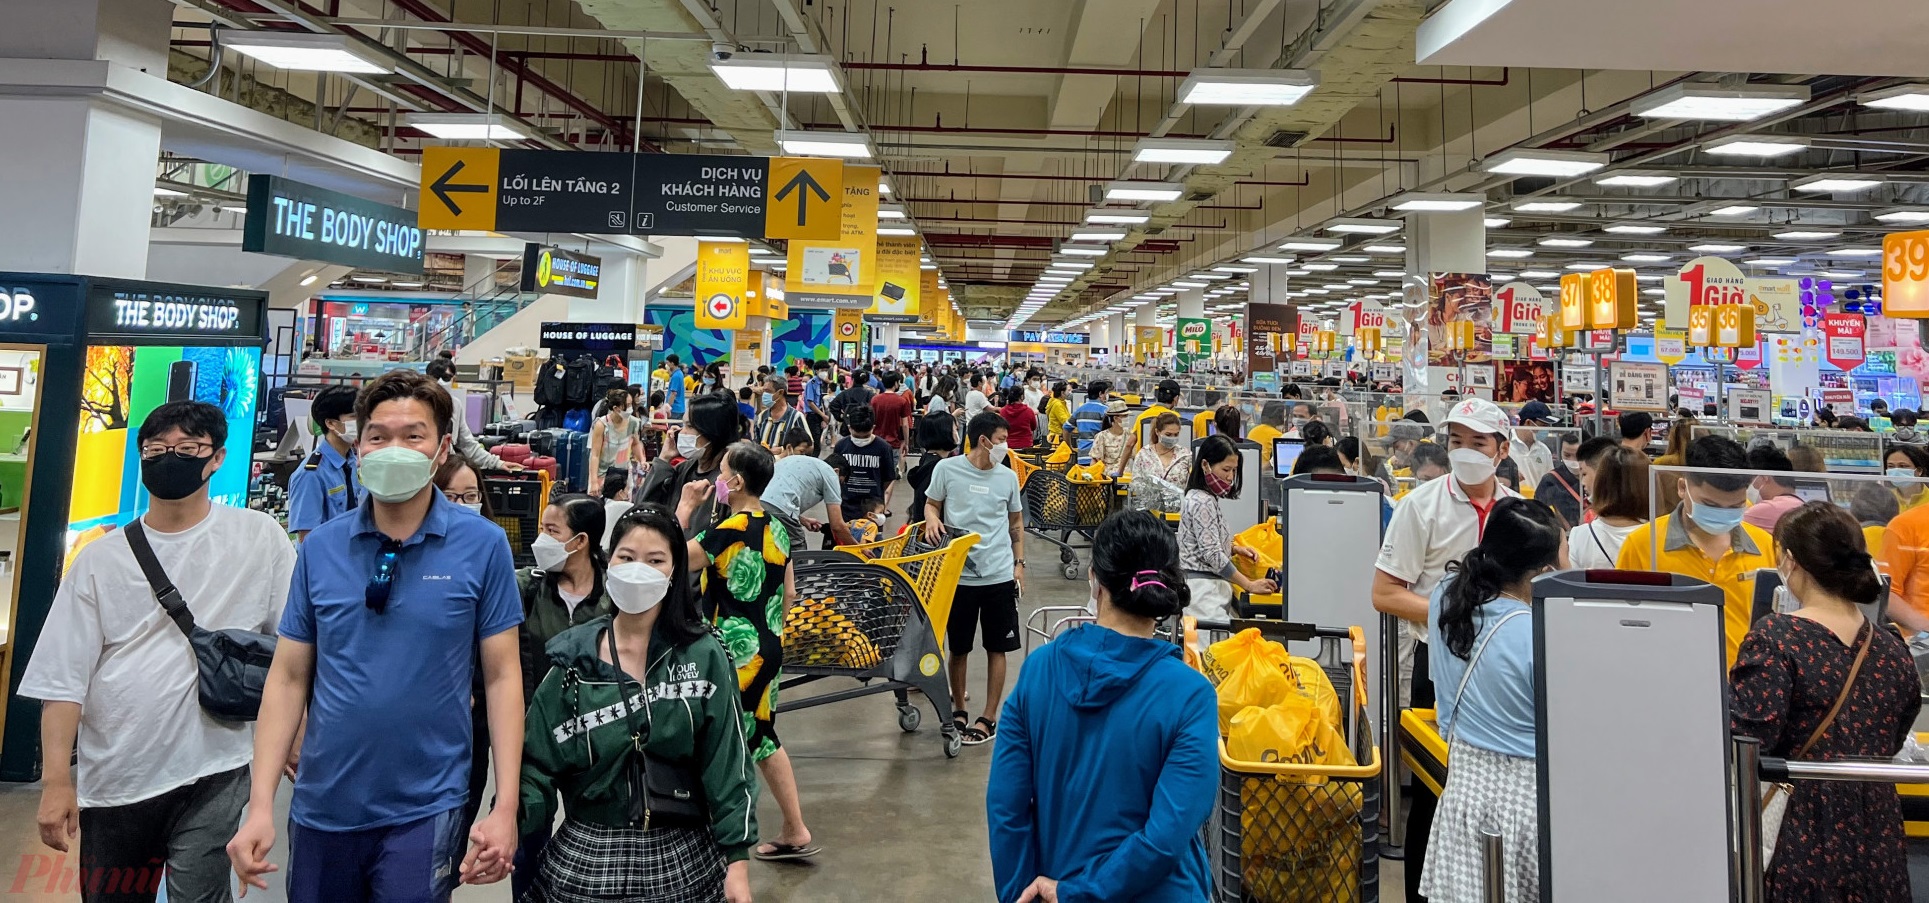 Cảnh mưa sắm đông đúc tại các siêu thị, trung tâm thương mại thời gian gần đây đã đông đúc hơn - Ảnh: Quốc Thái